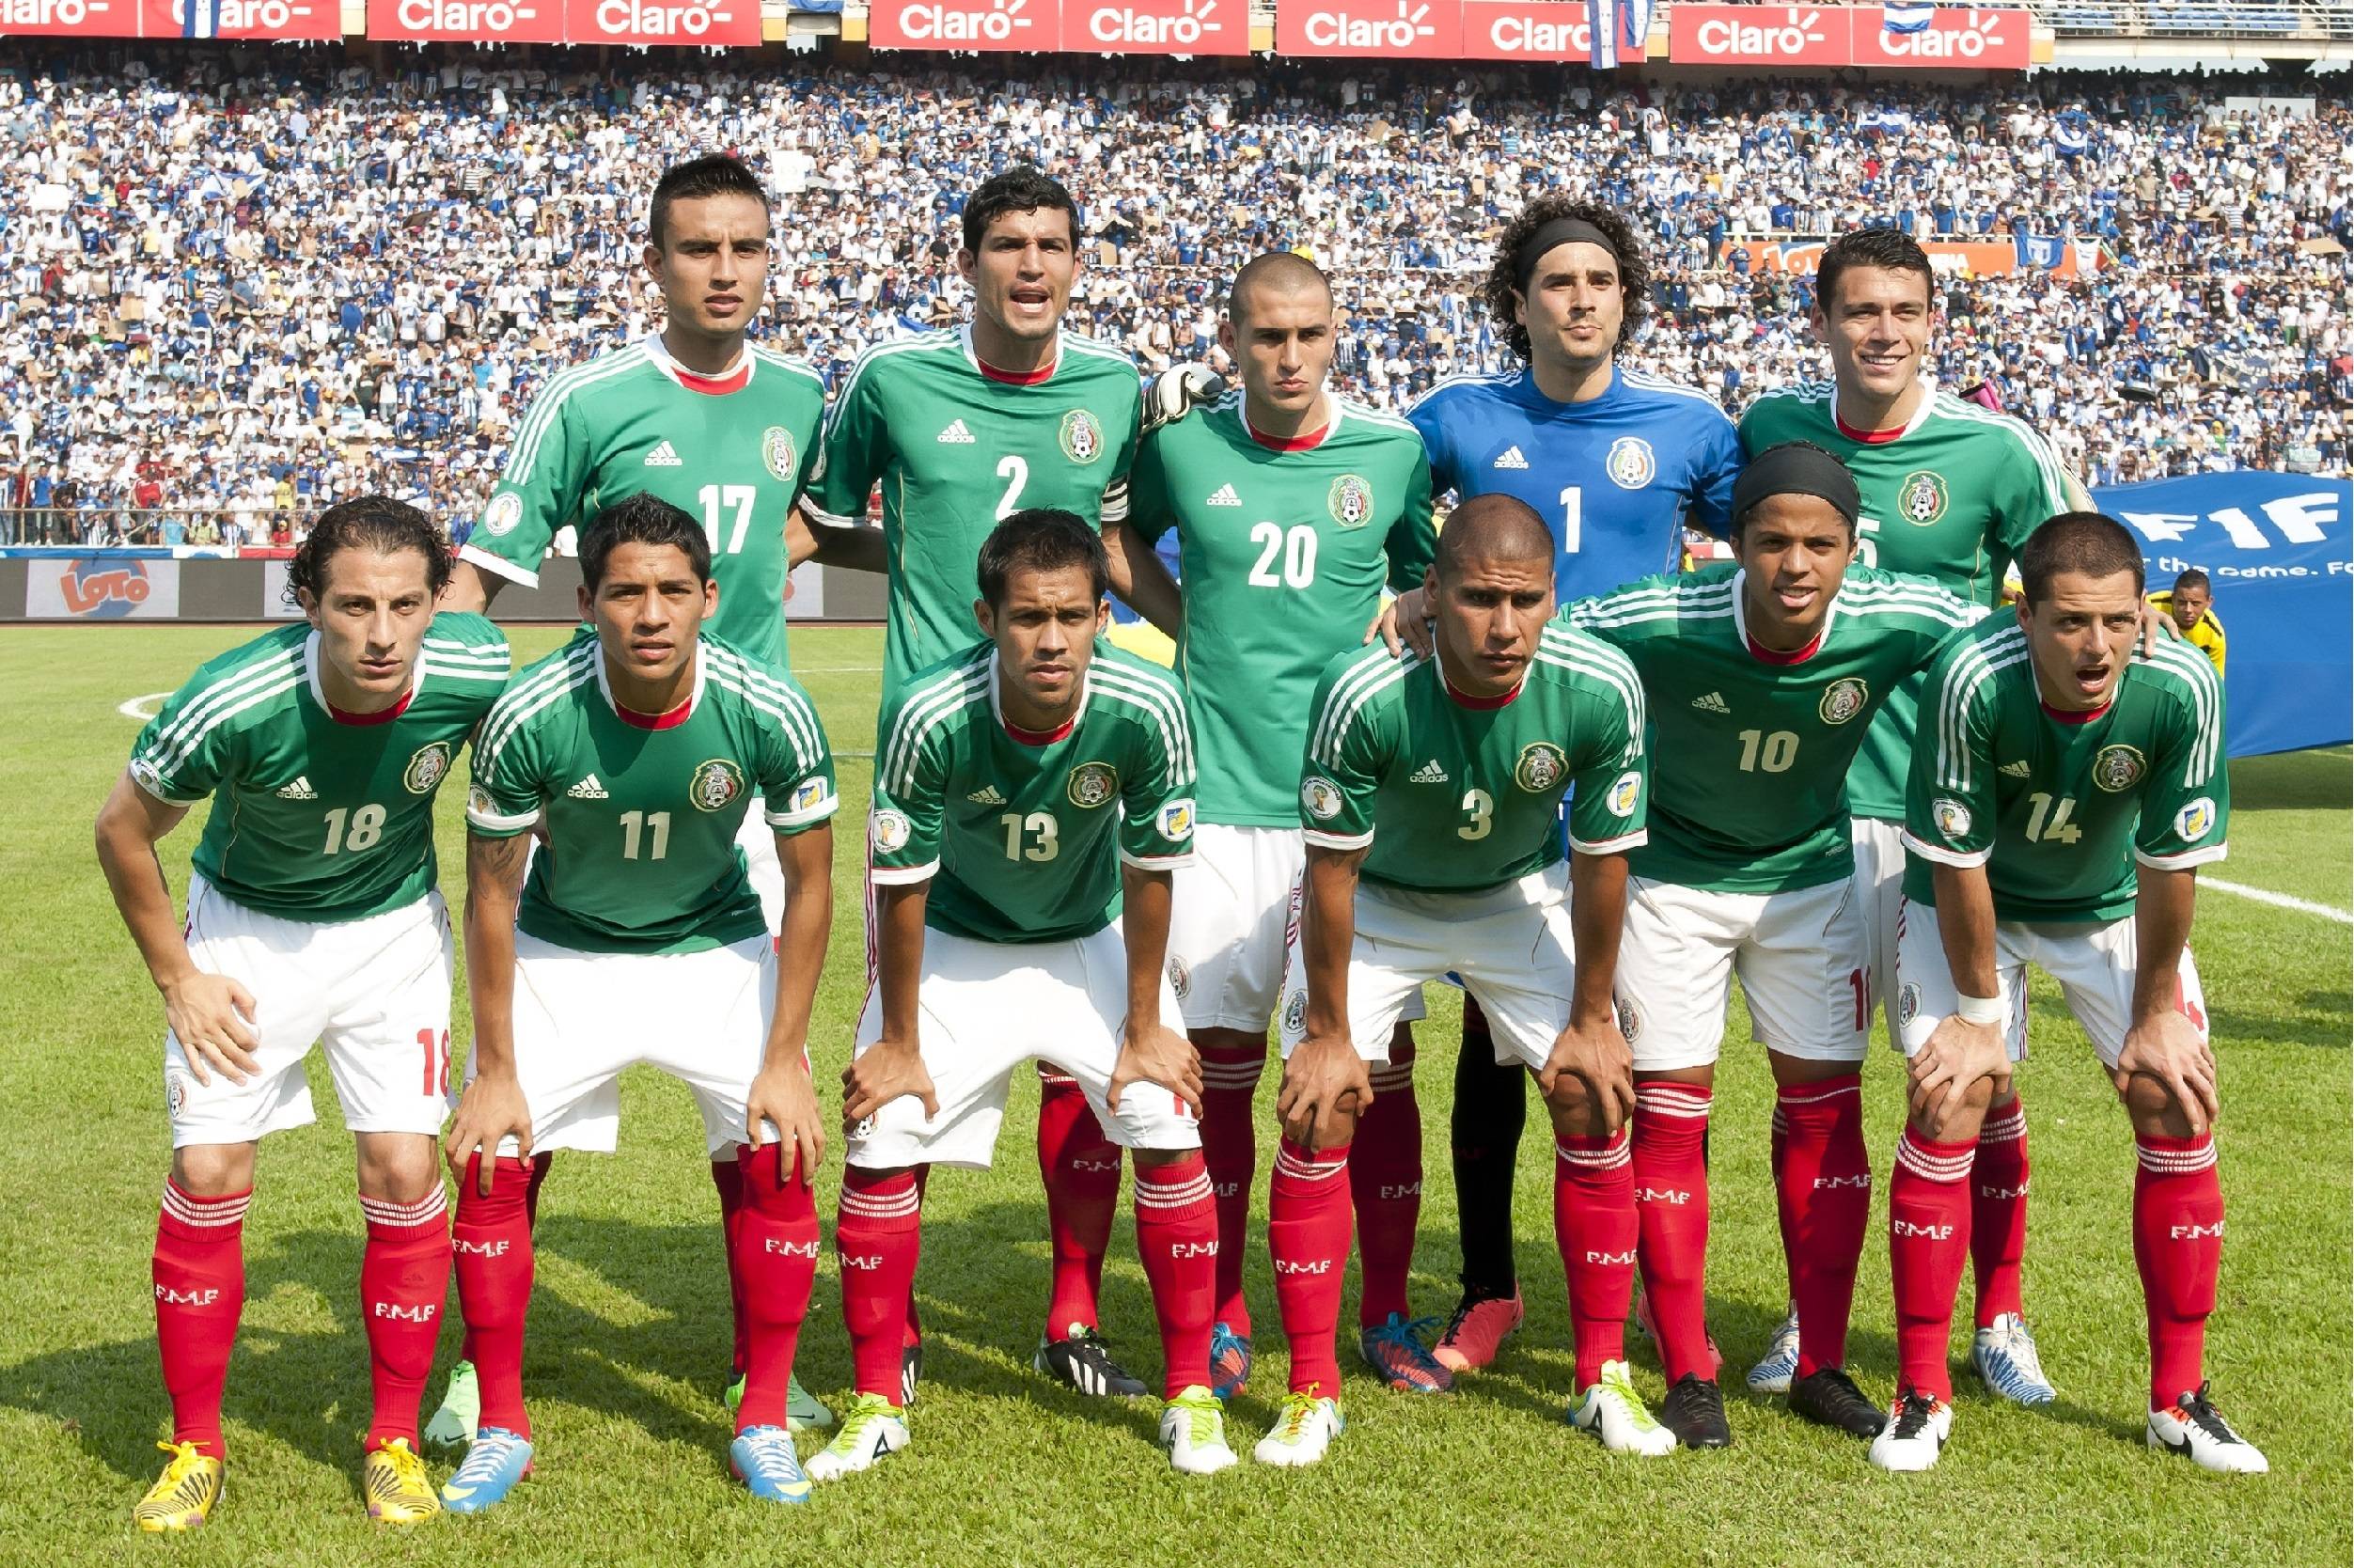 Mexico Soccer Wallpaper 2015